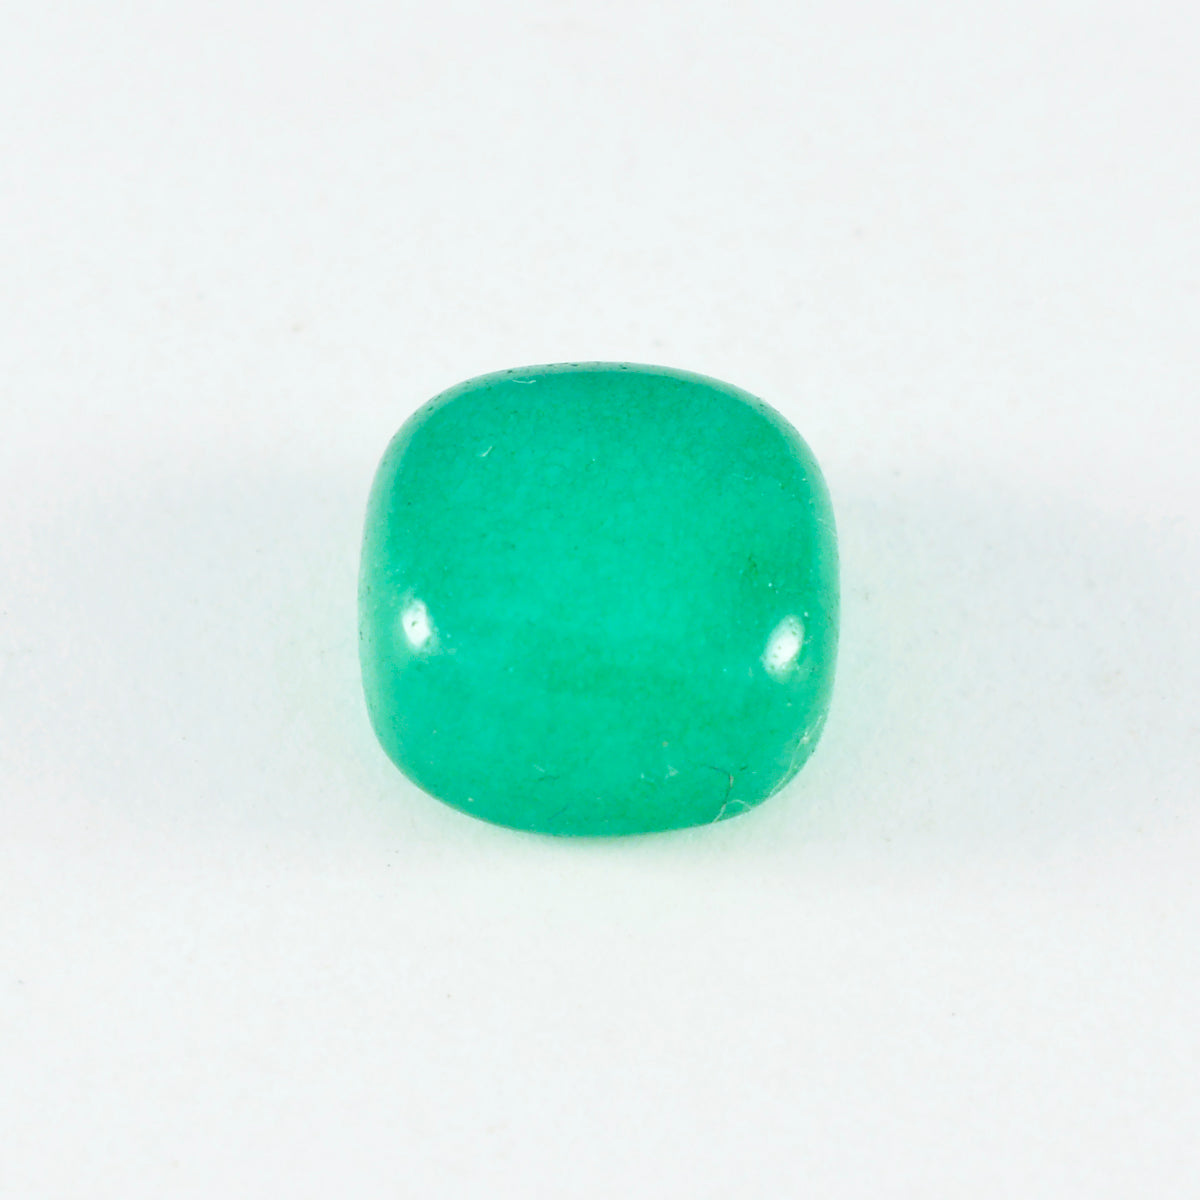 Riyogems 1PC Green Onyx Cabochon 9x9 mm Cushion Shape A+1 Quality Gems